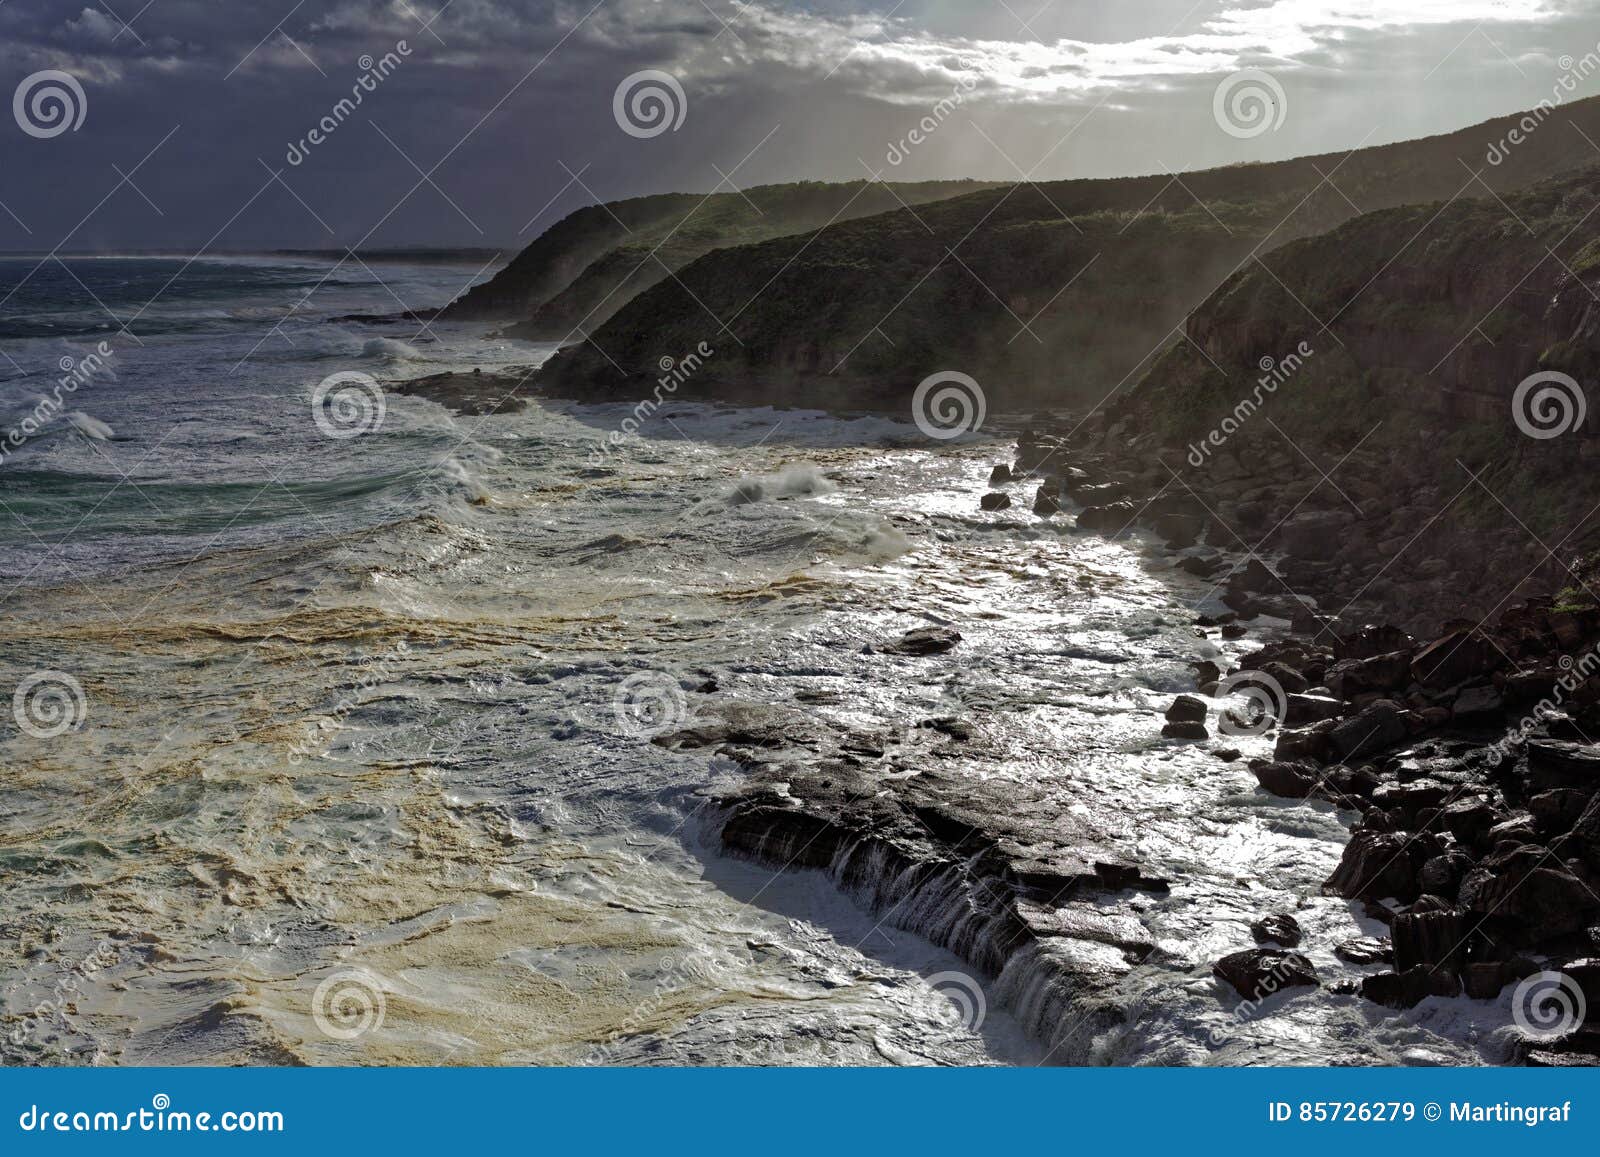 foamy sea by wild waves at rocky coast landscape